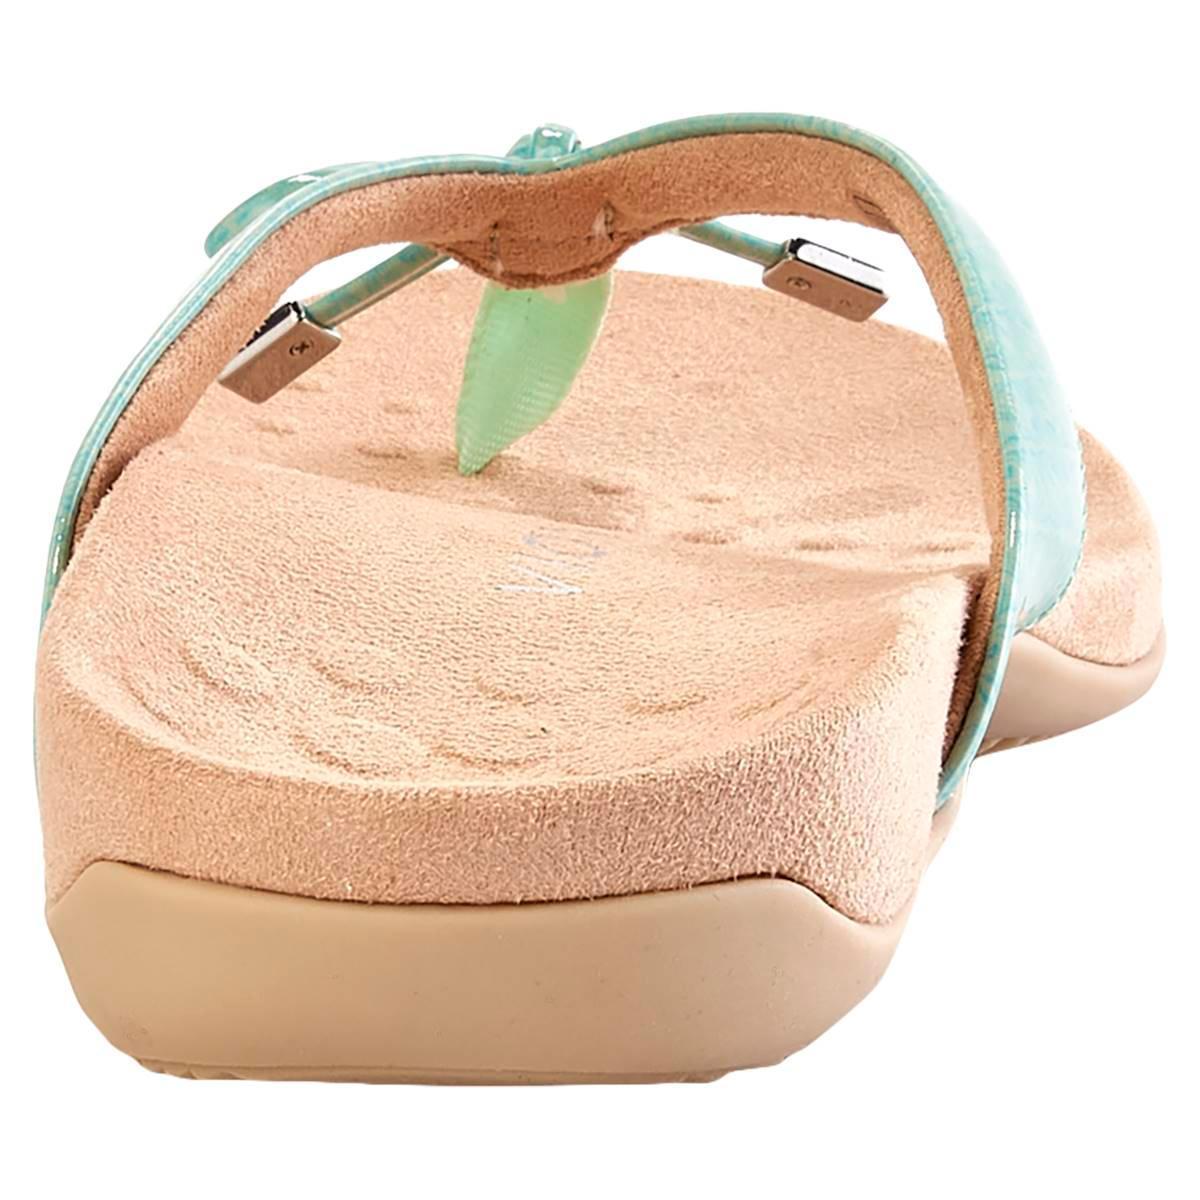 Vionic Bella II Sandal Product Image